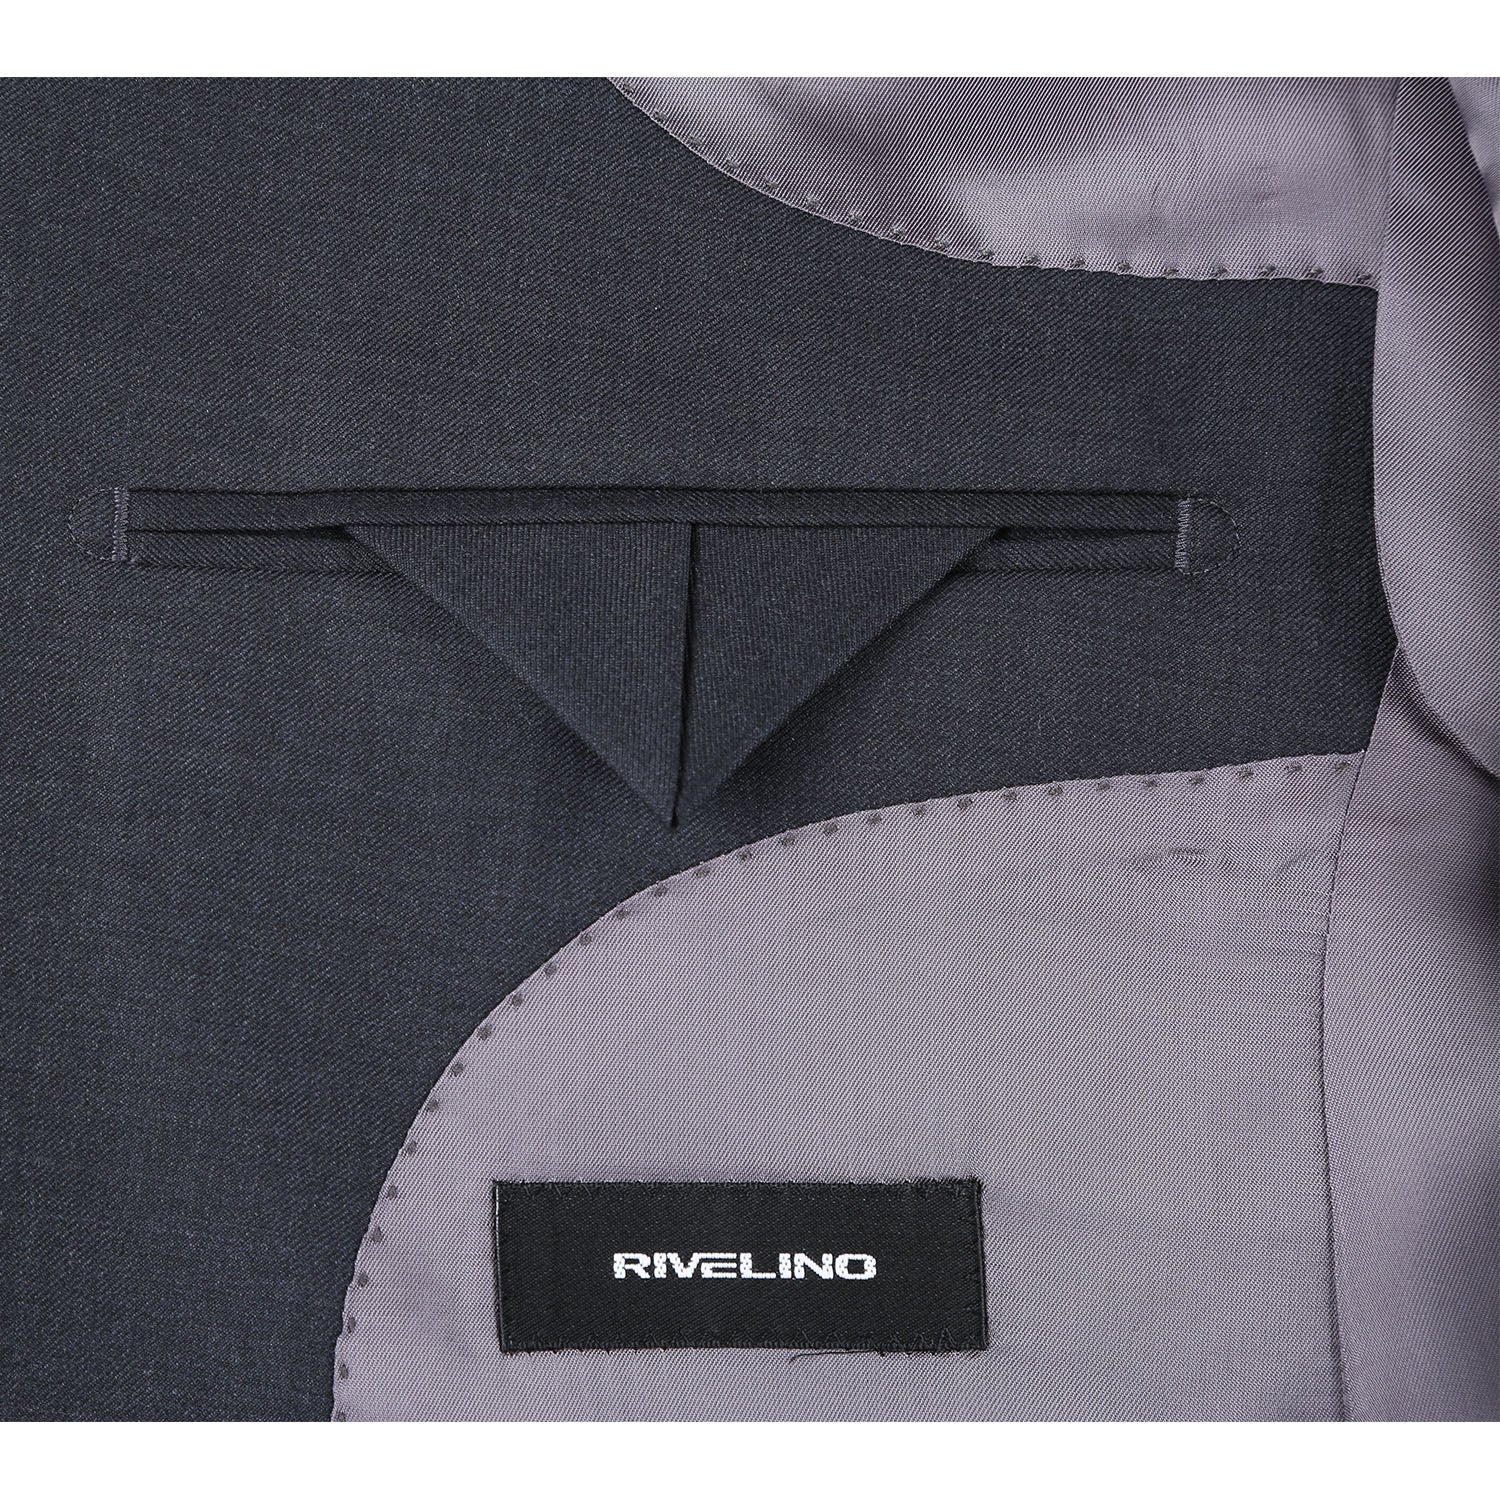 Rivelino Men’s Charcoal Half-Canvas Suit 6